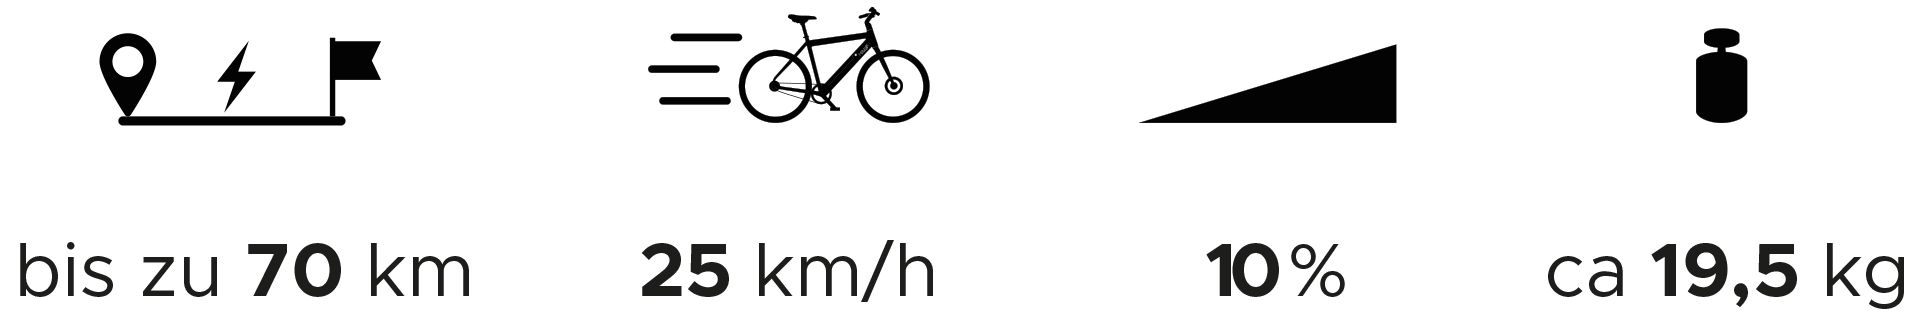 Grafik/Pictos für Akku-Reichweite, Geschwindigkeit, Steigungsunterstützung und Gewicht beim MOUGG ONE